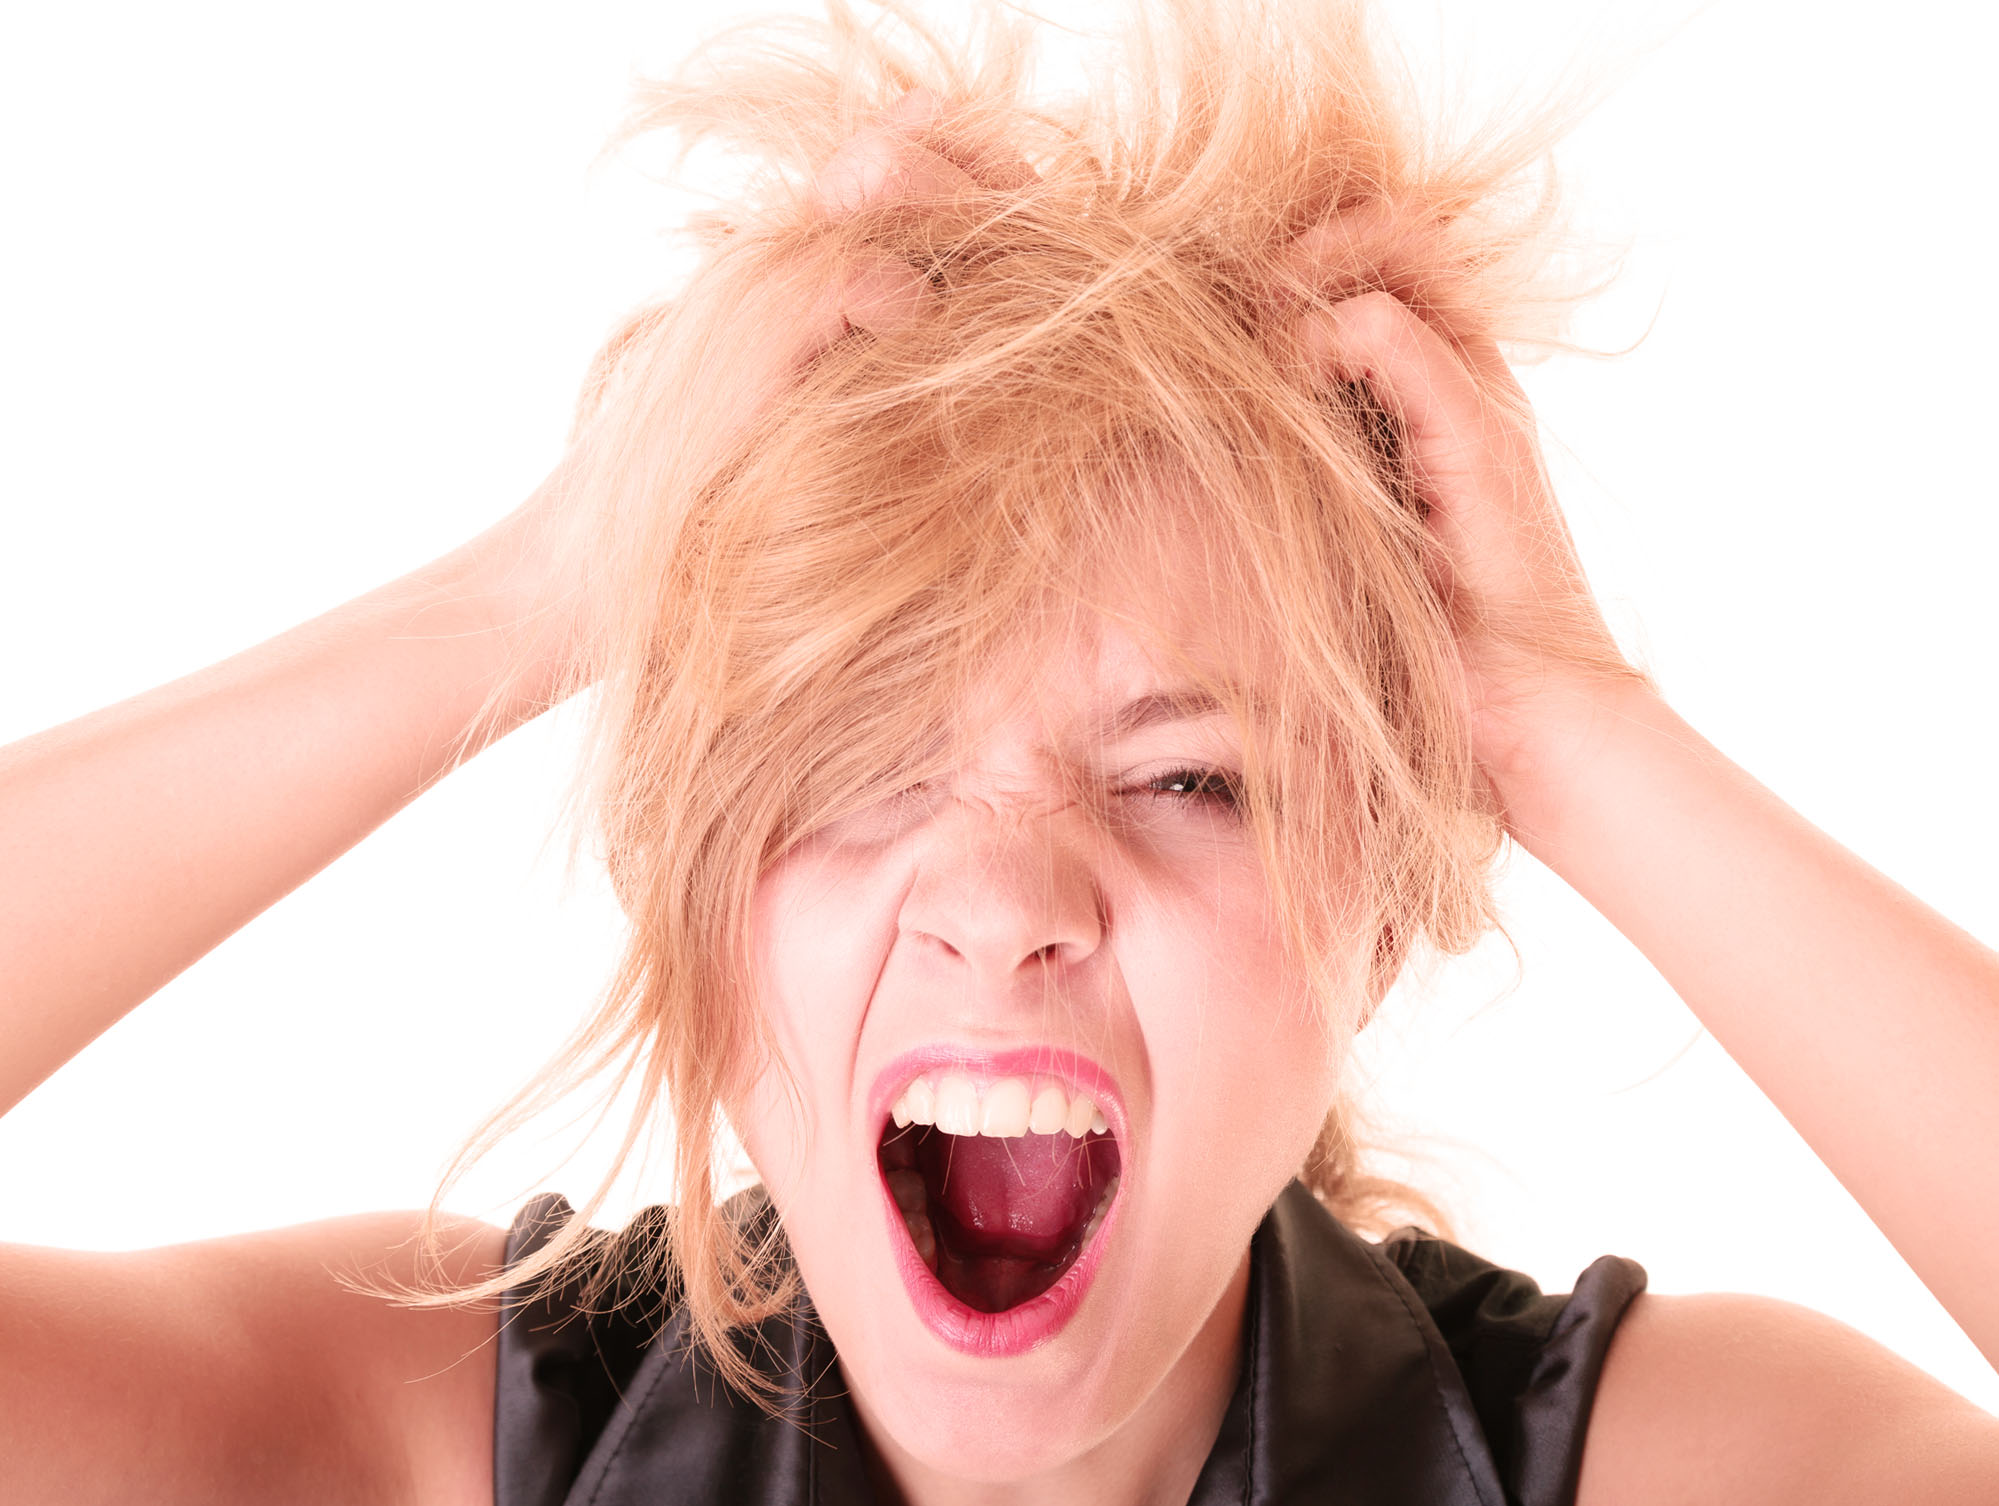 که درد را در ریشه مو درمان می کند. چگونه برای درمان ریشه های مو در احساسات دردناک دوره ای. چگونه از خلاص شدن از احساسات منفی خلاص شوید.